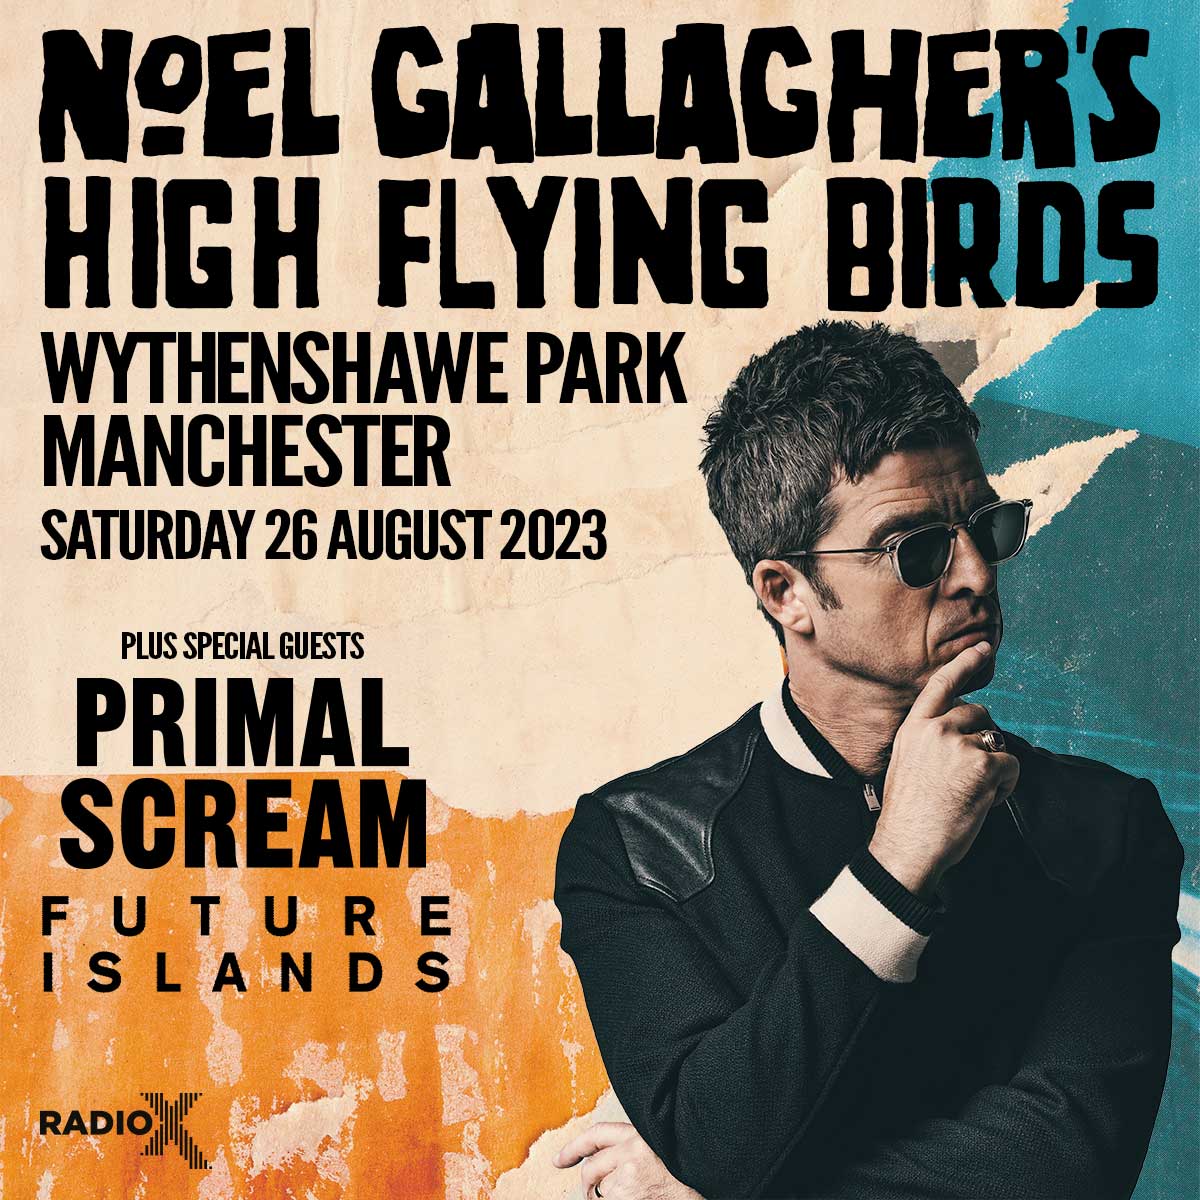 Noel Gallagher's High Flying Birds poster for Wythenshawe Park gig